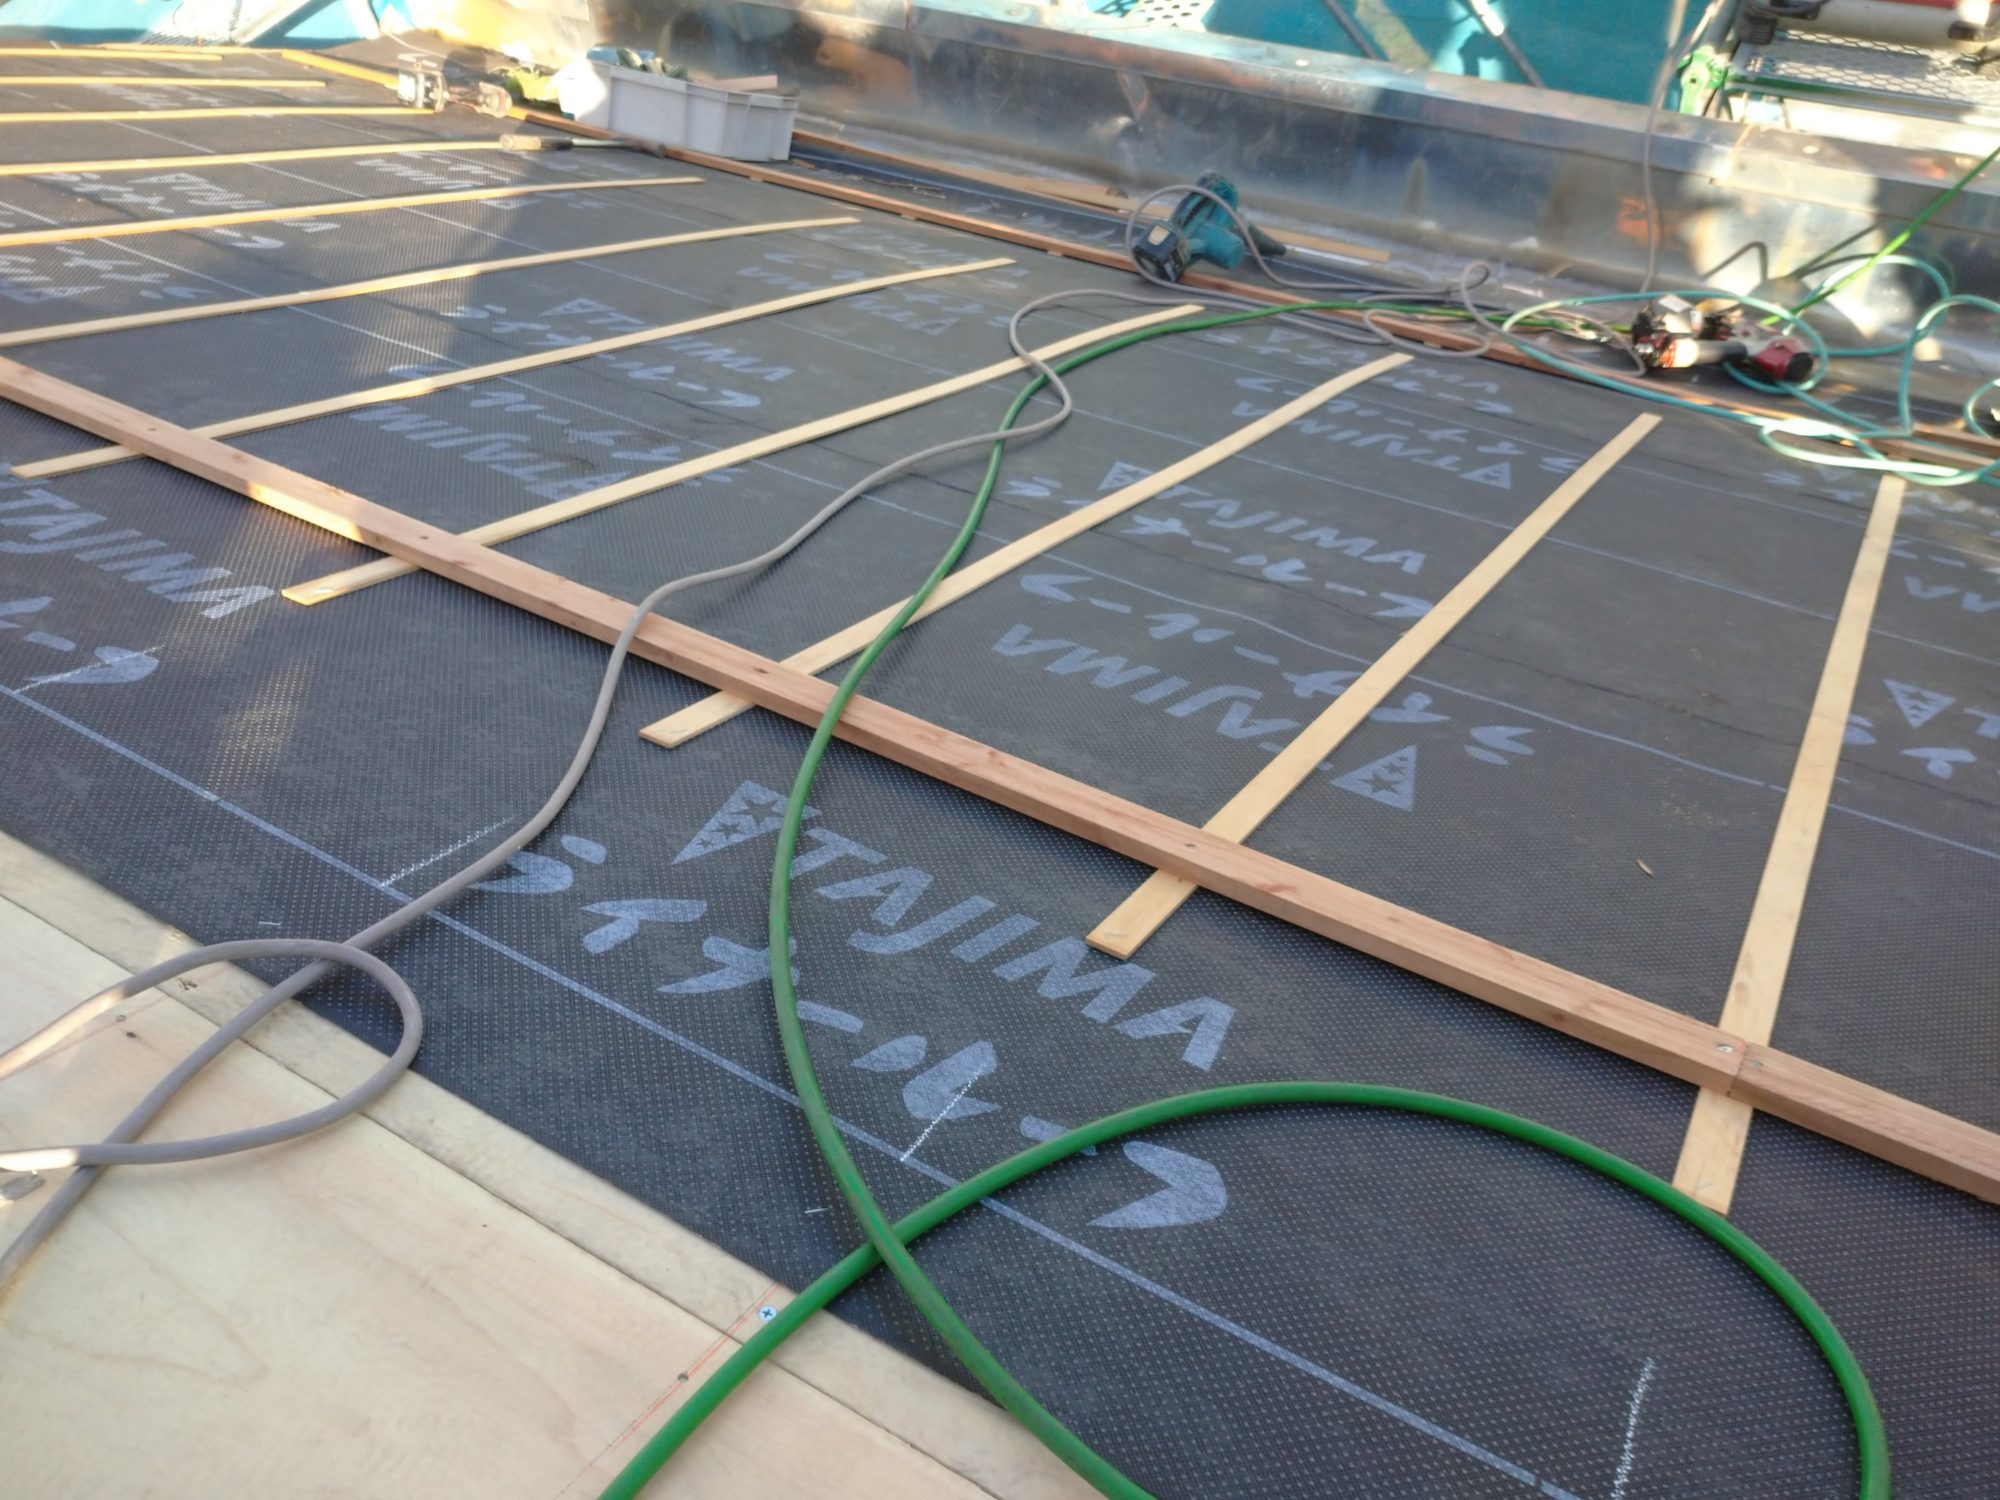 岐阜市の民家で、屋根のリフォーム工事をしています。